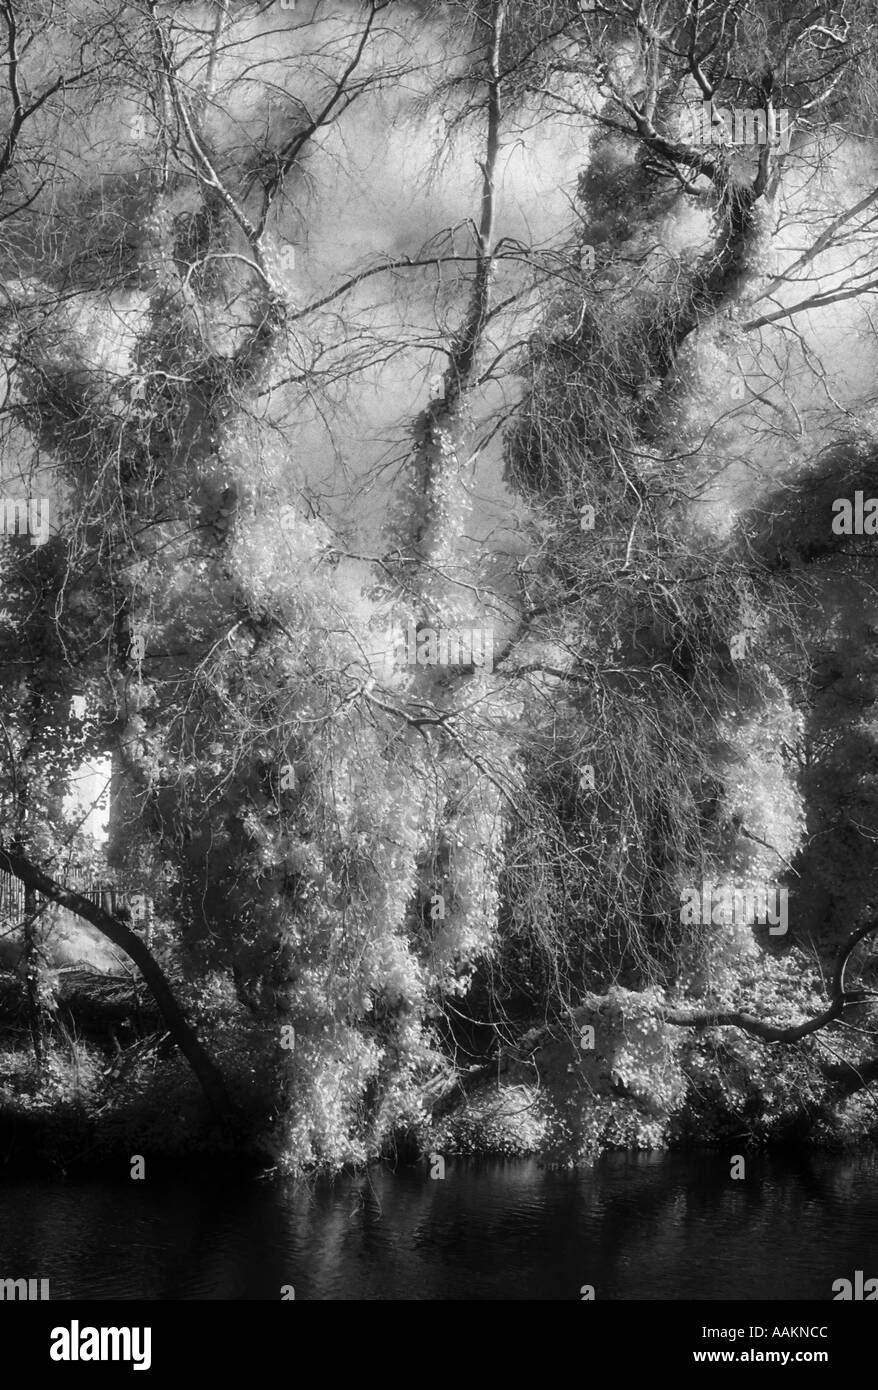 Un frondoso bosque escena capturada en granulado blanco y negro infrarrojo demostrando el efecto madera. Foto de stock